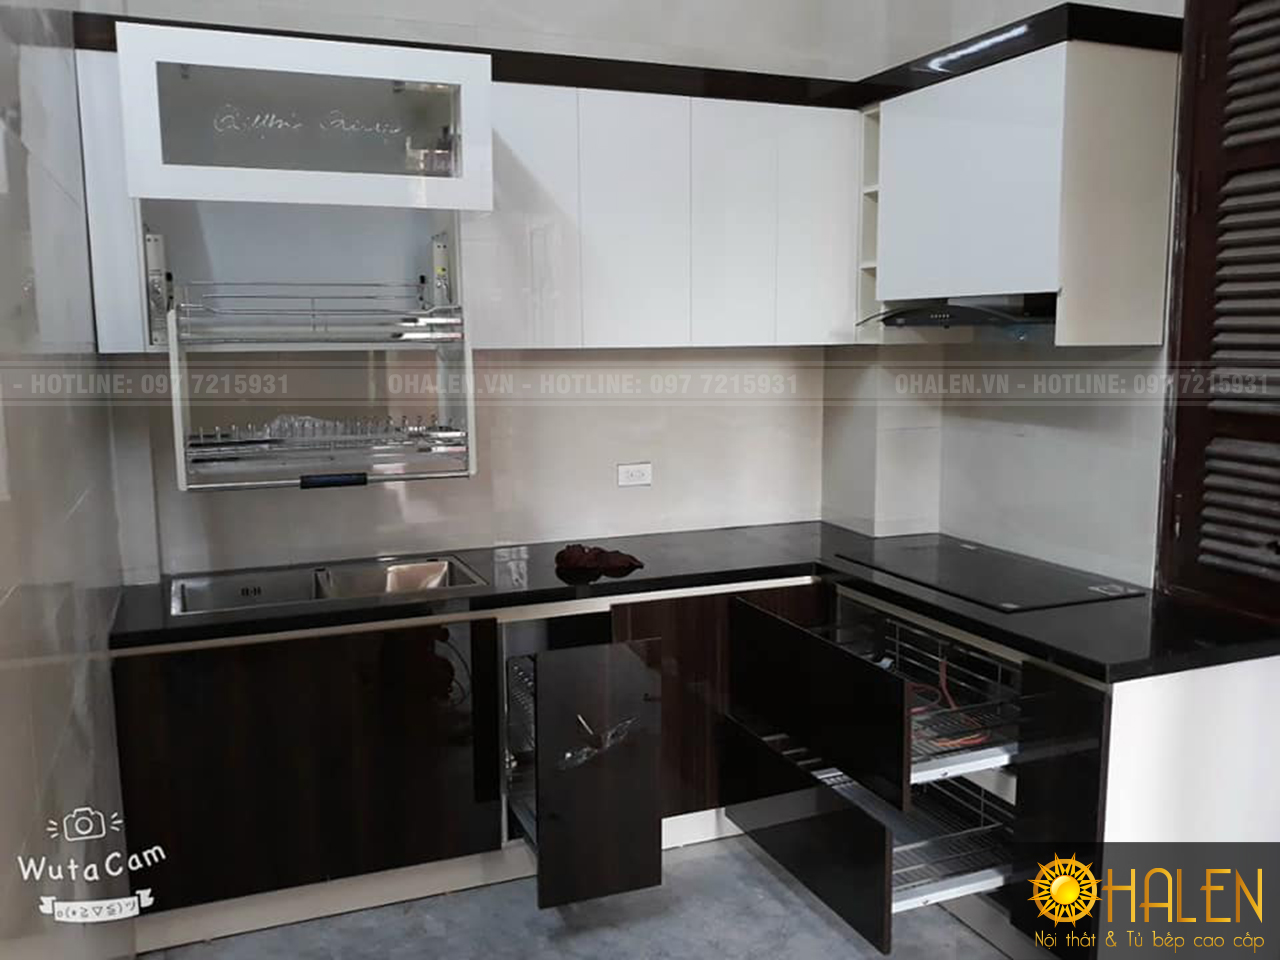 Tủ bếp Picomat cánh Acrylic màu vân gỗ nâu đậm sạch sẽ, dễ vệ sinh và lau chùi